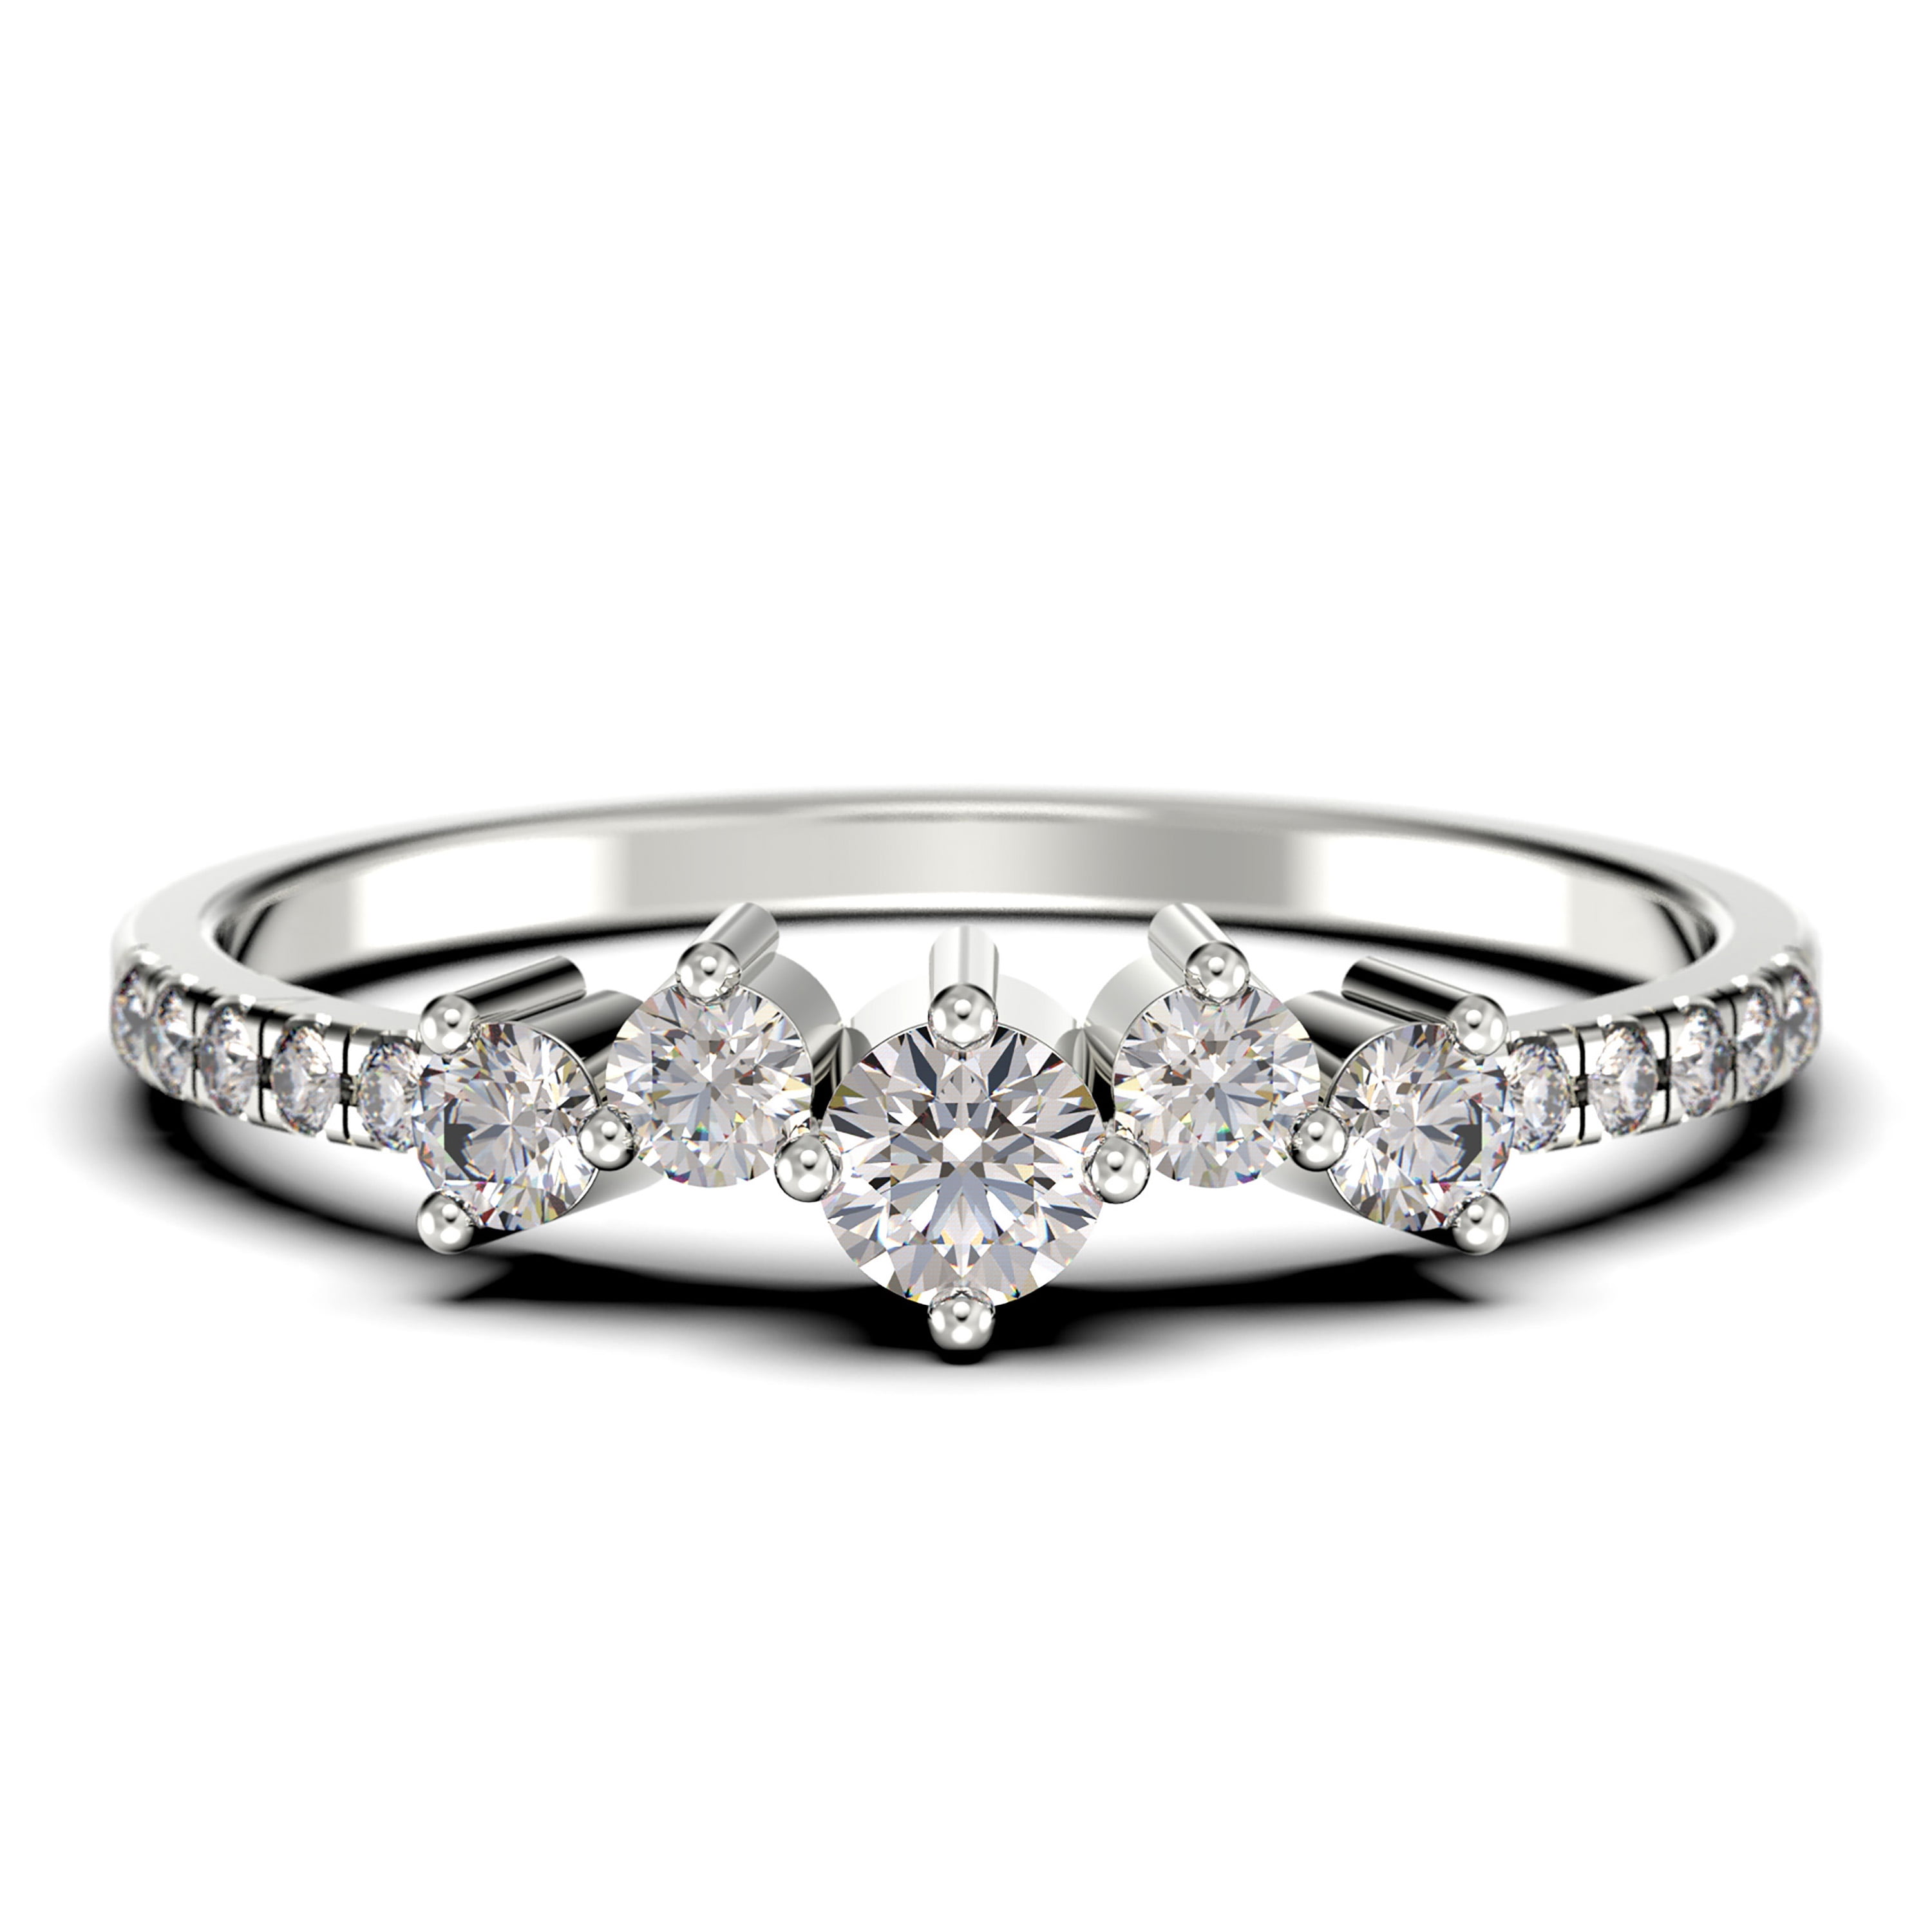 Diamond Wedding Band Ring 0.60 Ct Round Cut 14K White Gold 7 stone Anniversary 